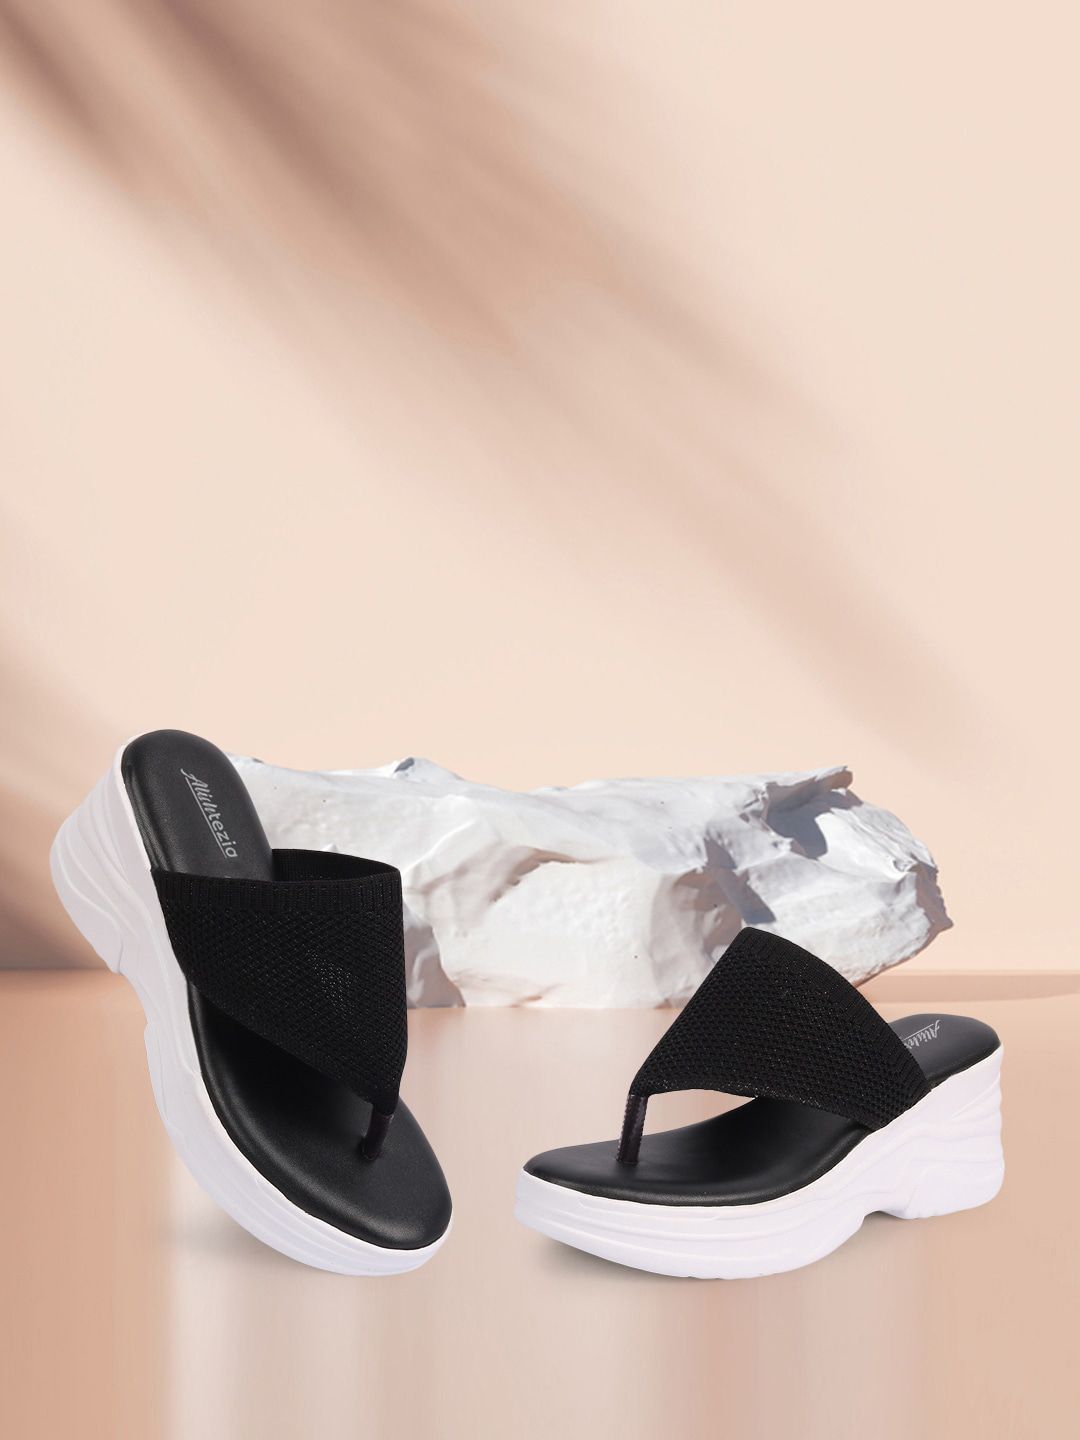 Alishtezia Black Printed PU Block Sandals Price in India